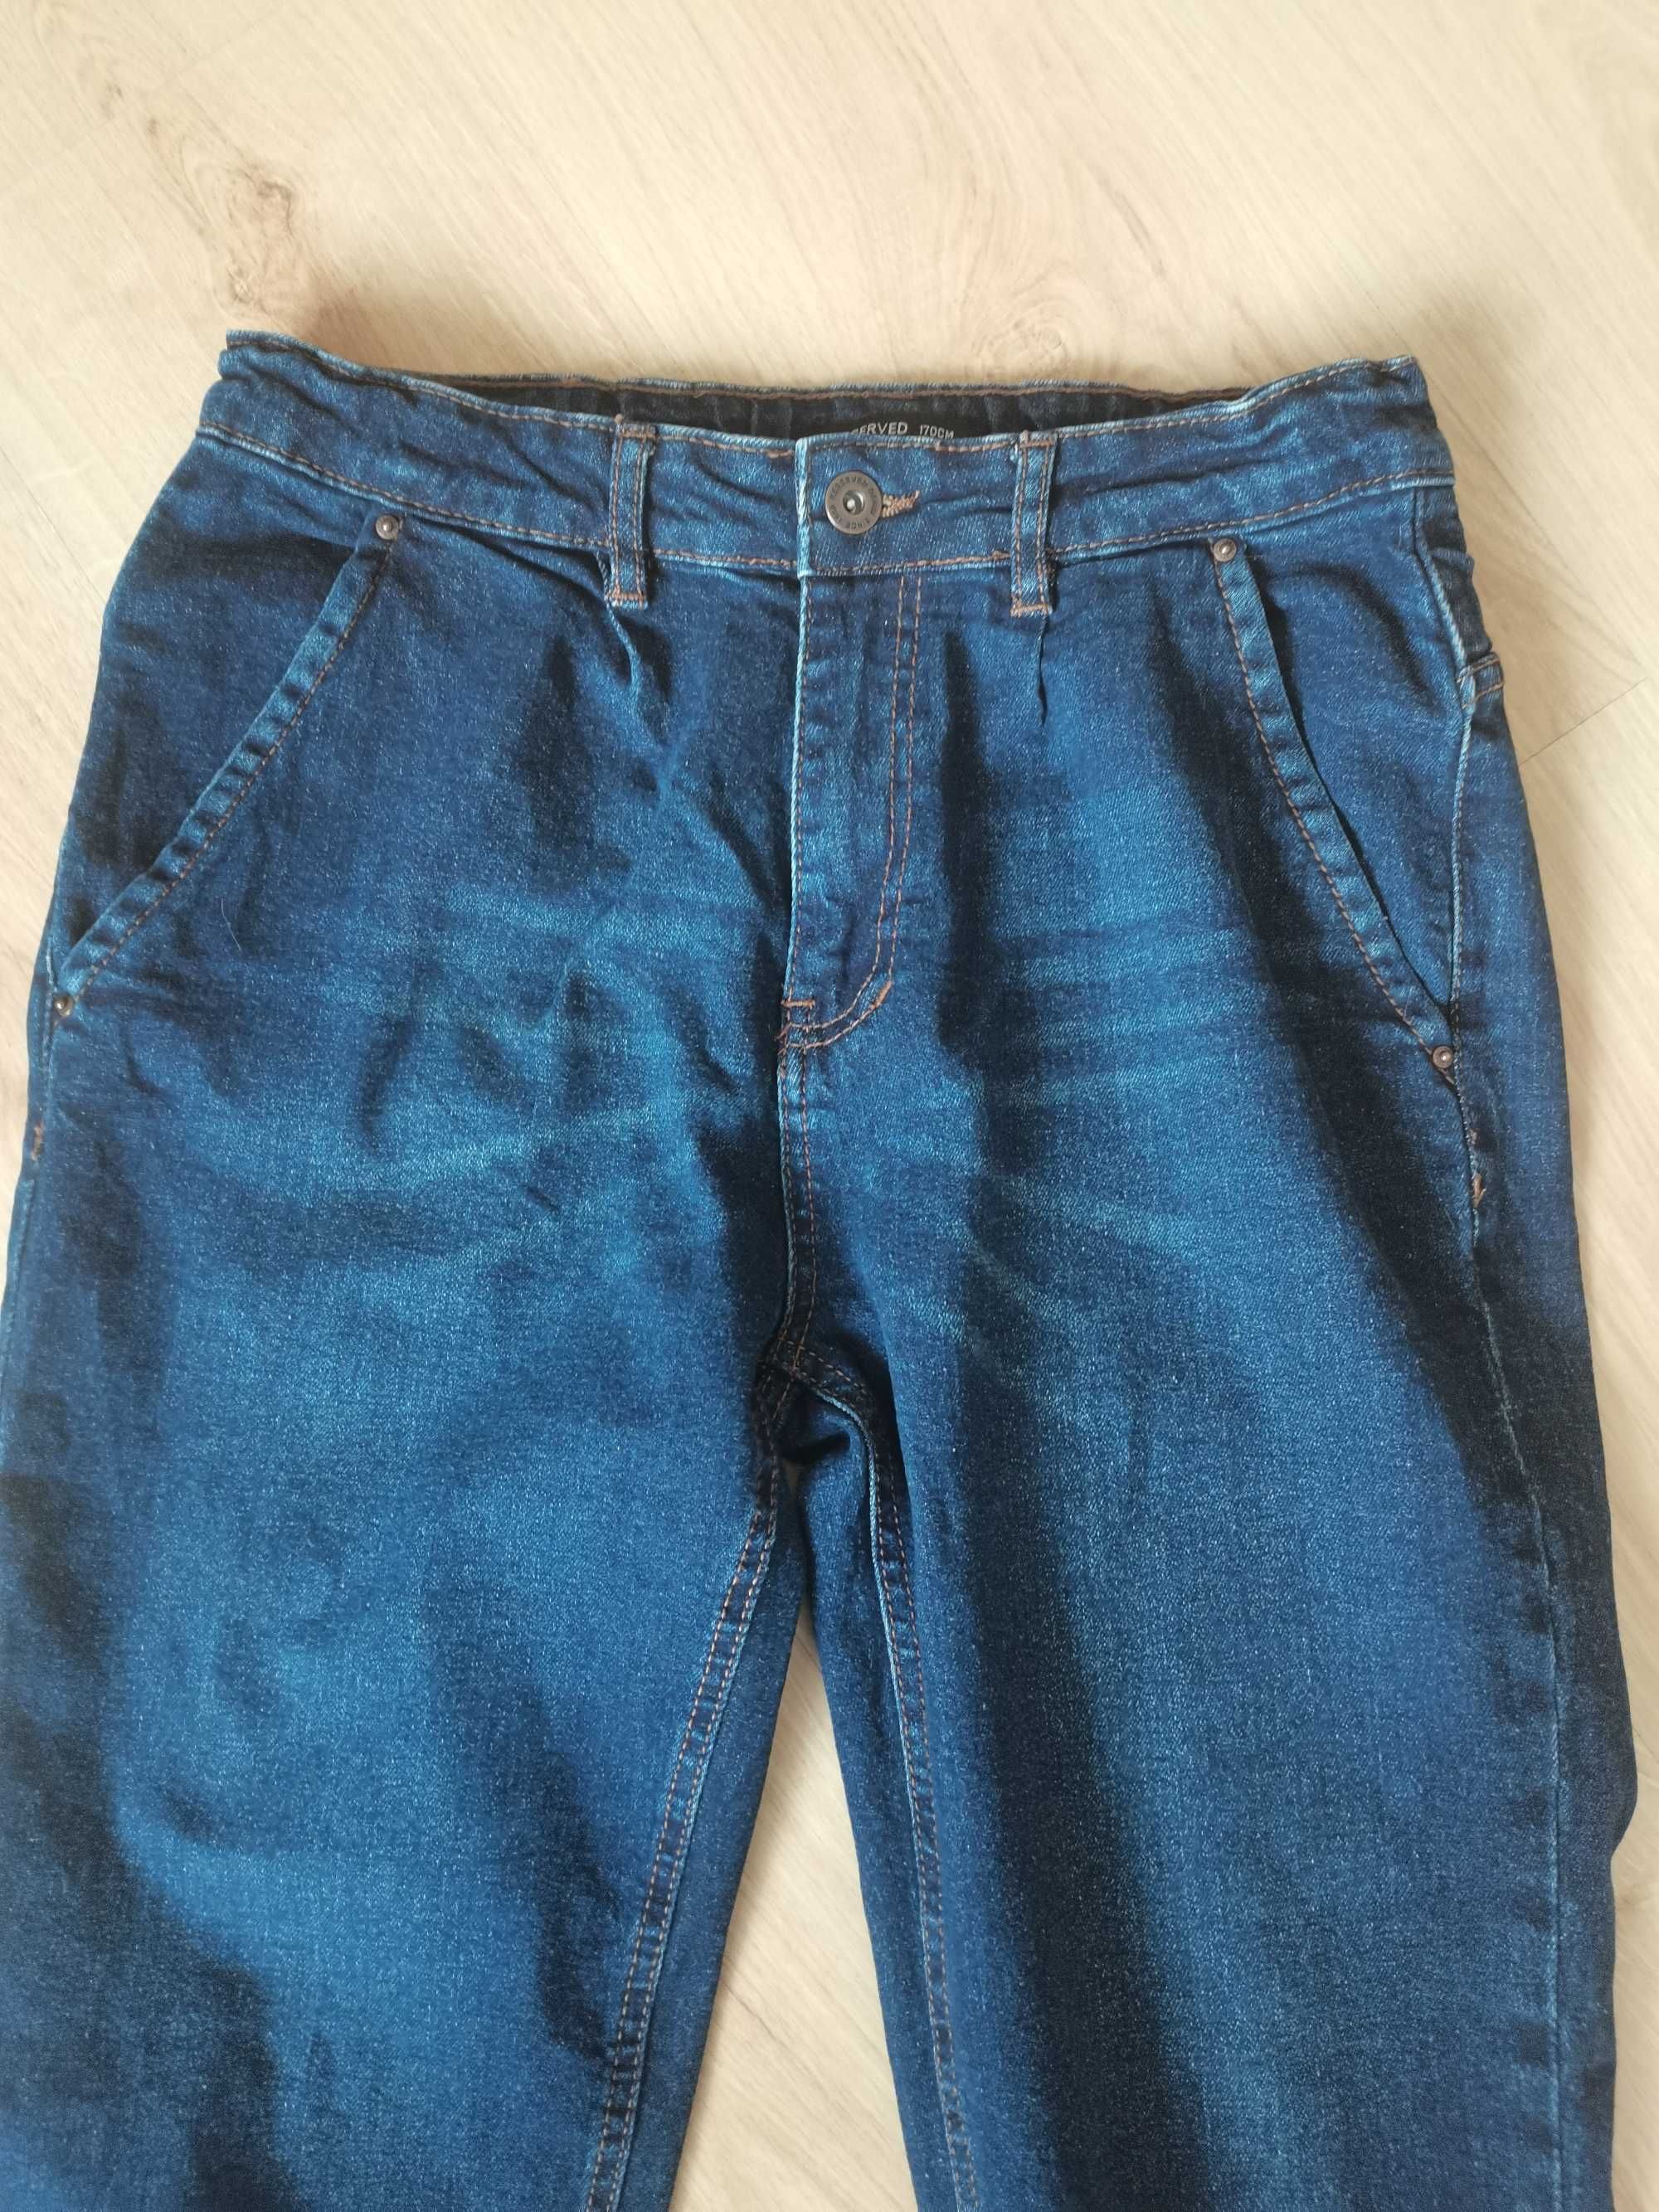 Granatowe jeansy Reserved, rozmiar 170 cm stan bardzo dobry.